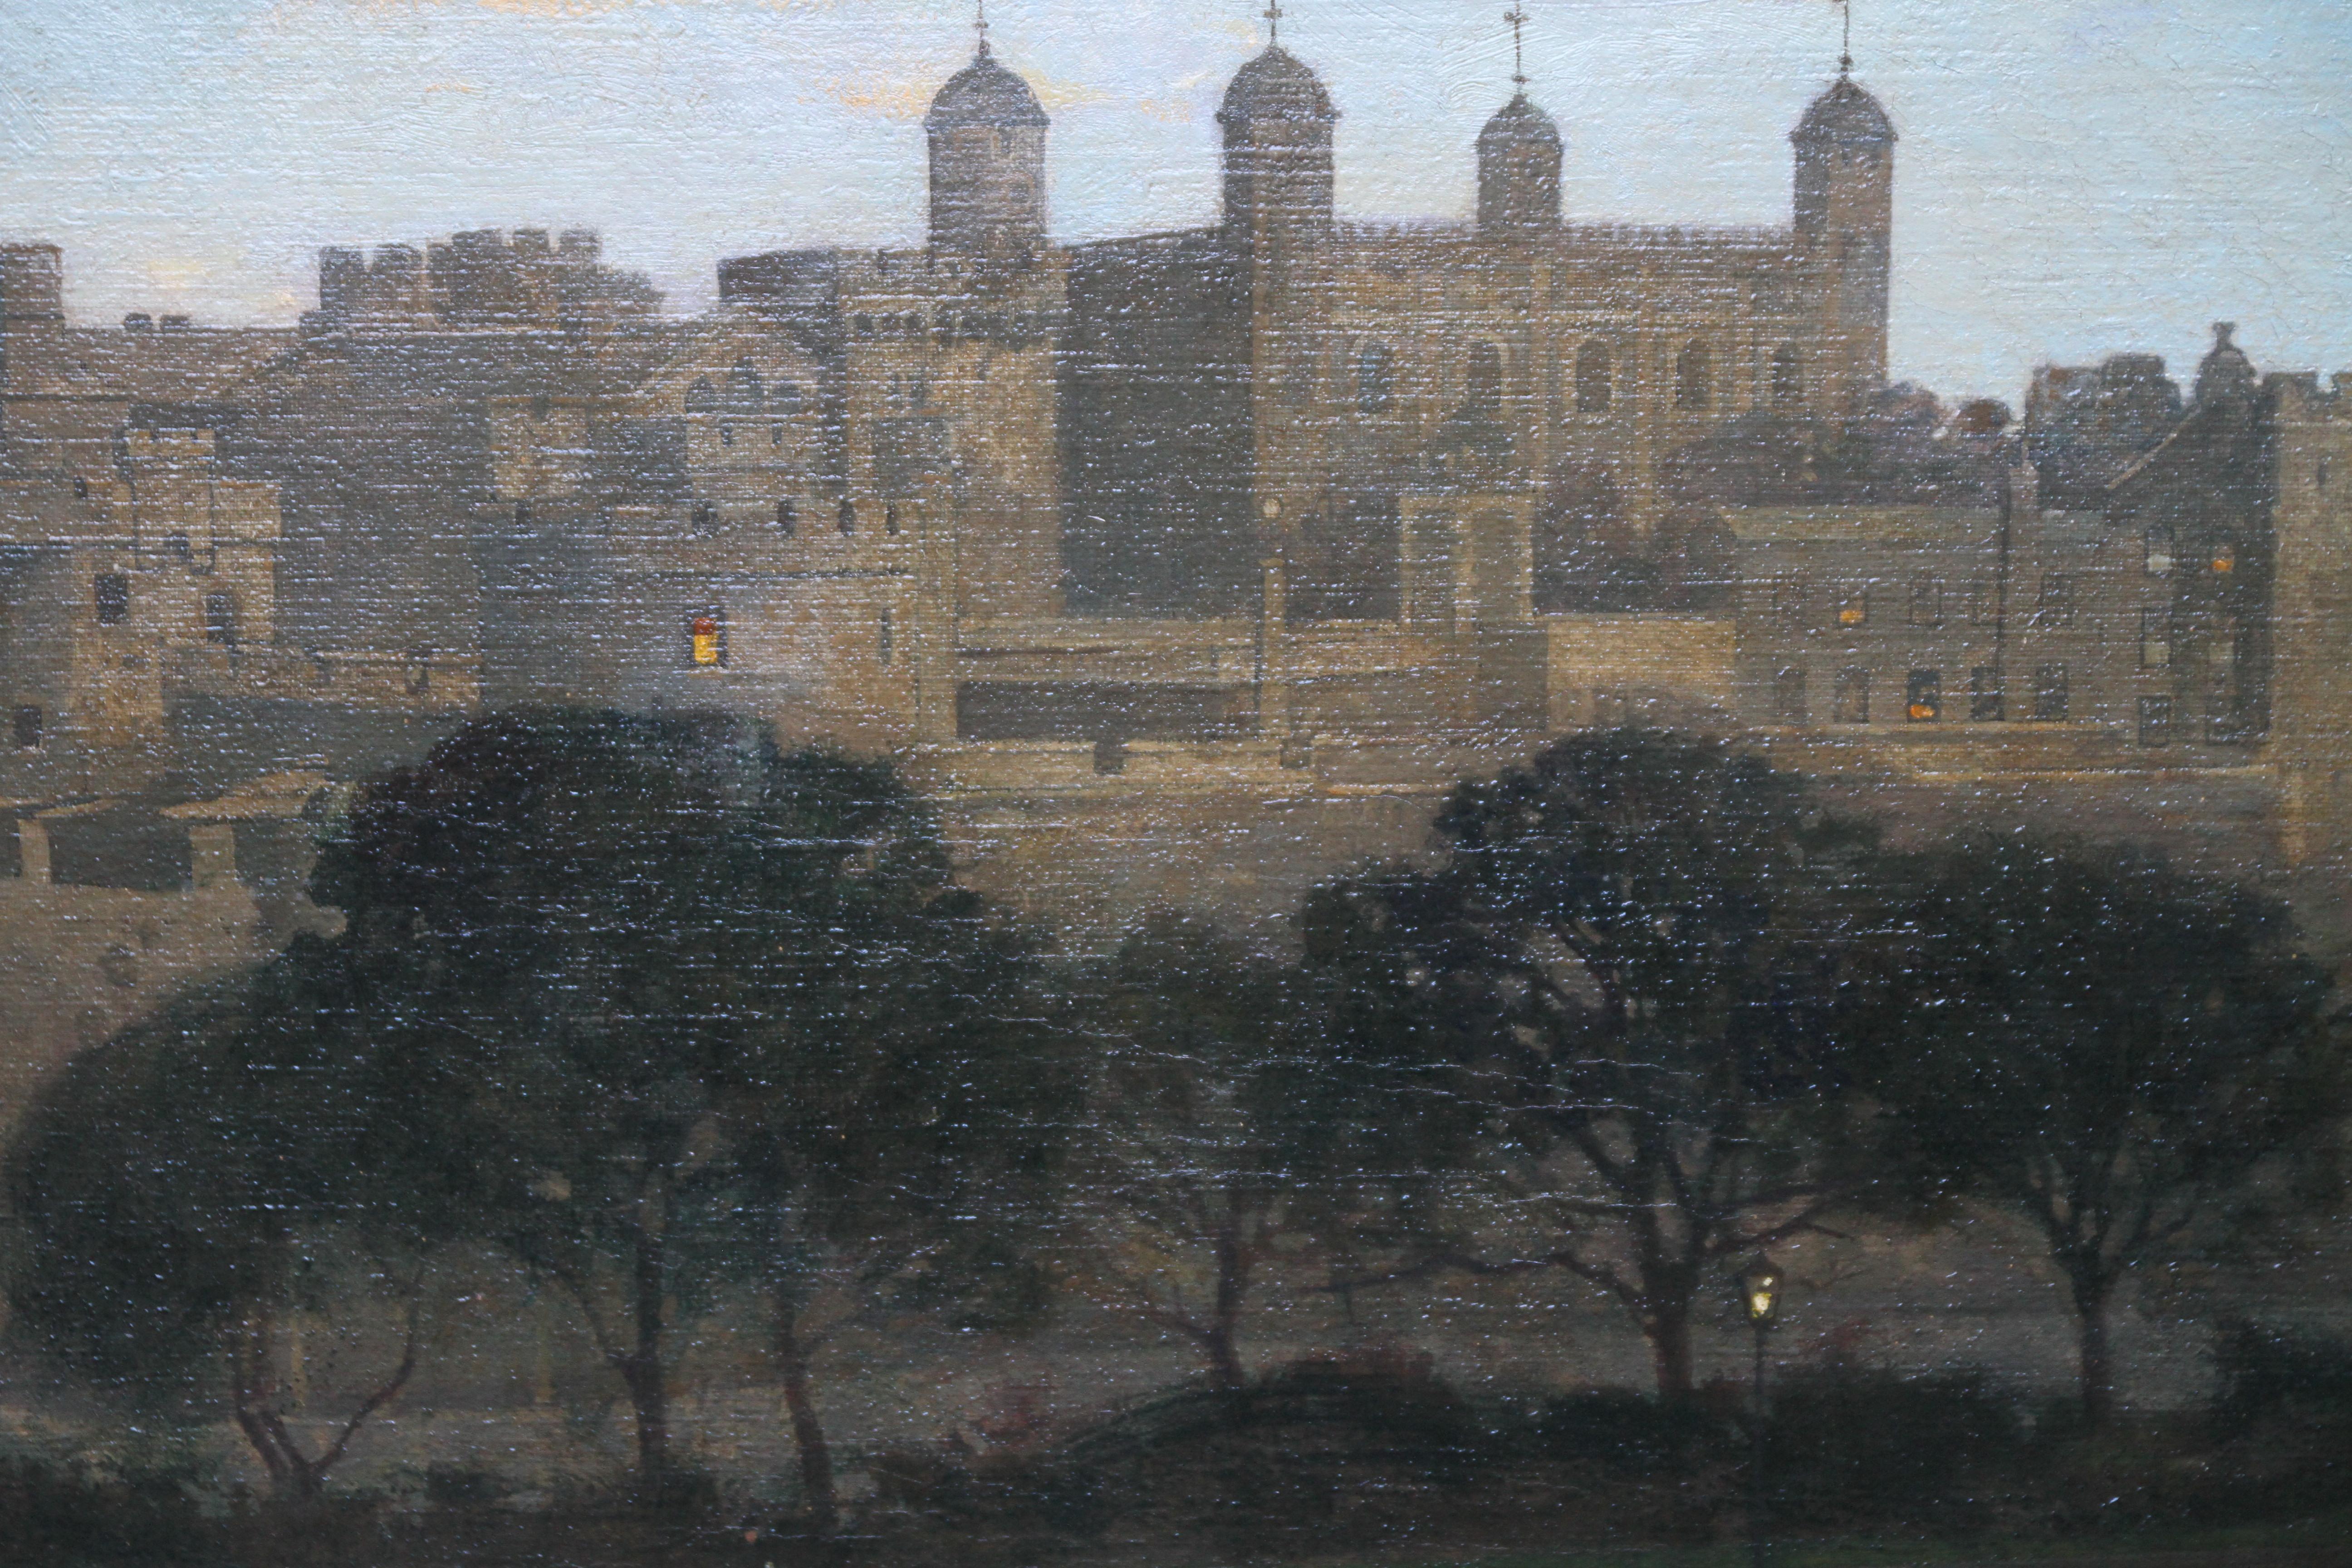 Une très belle huile sur toile de l'artiste britannique William Dacres Adams. Elle a été peinte vers 1920 et représente la Tour de Londres de nuit. Un beau nocturne, la lueur de la Tour contrastant avec celle de la rue. Une superbe peinture et un